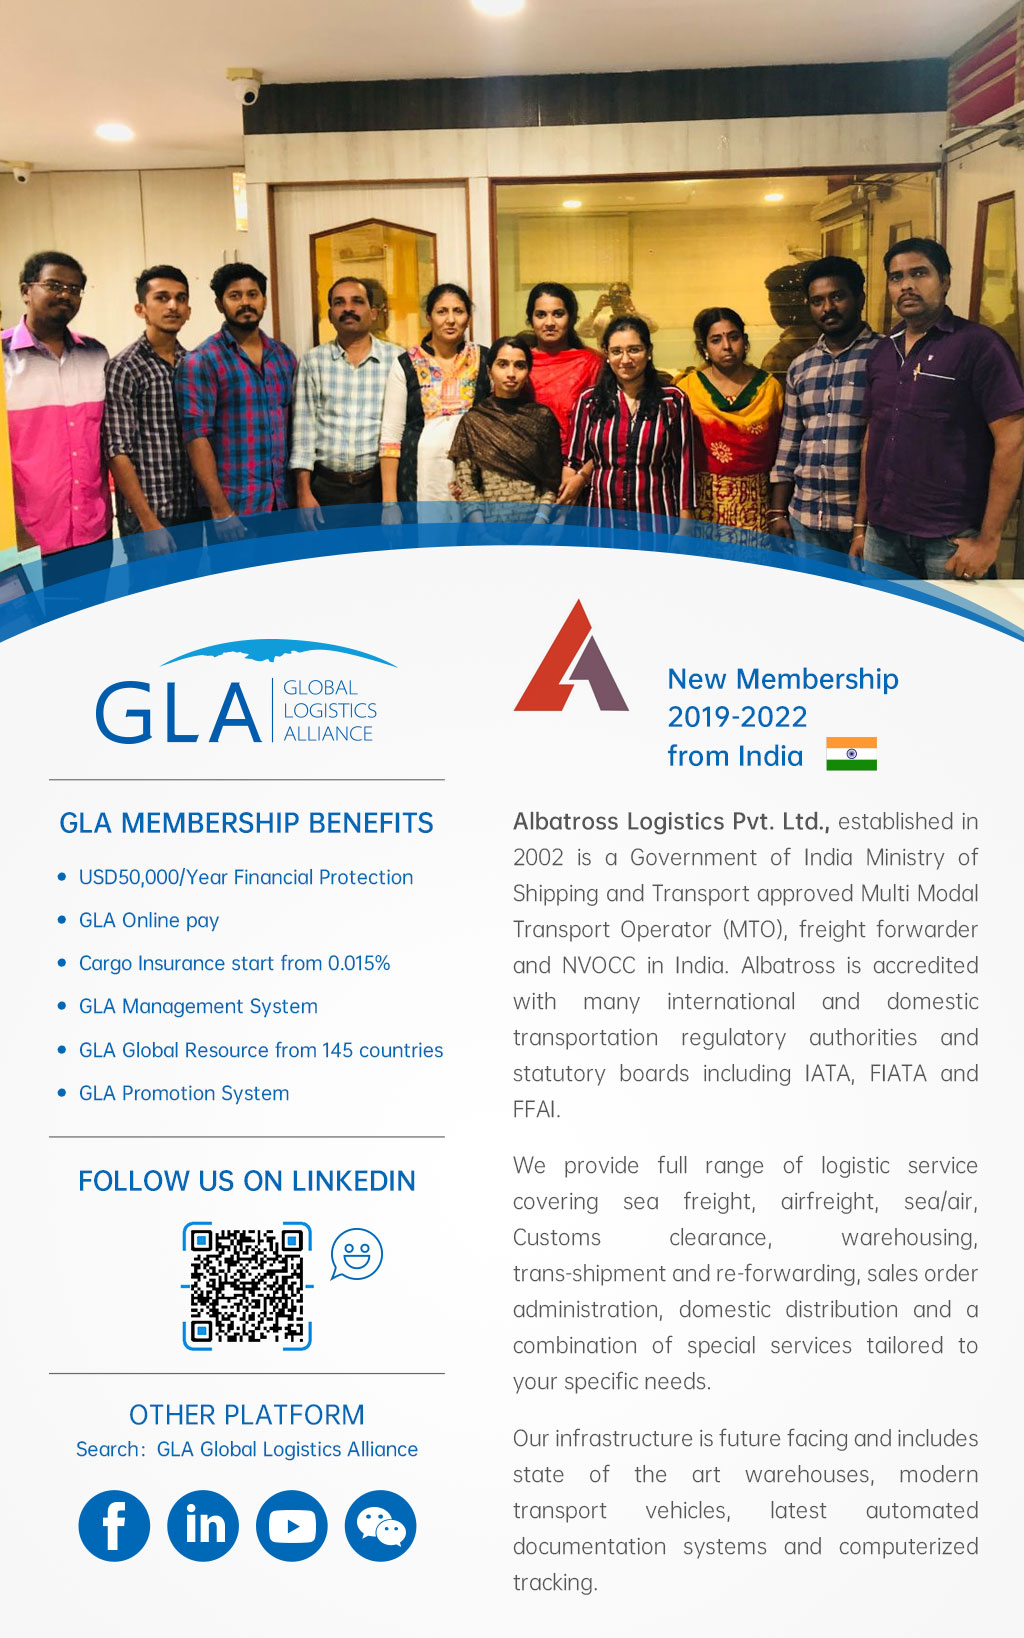 GLA New Membership — Alabatross Logistics Pvt ltd from India